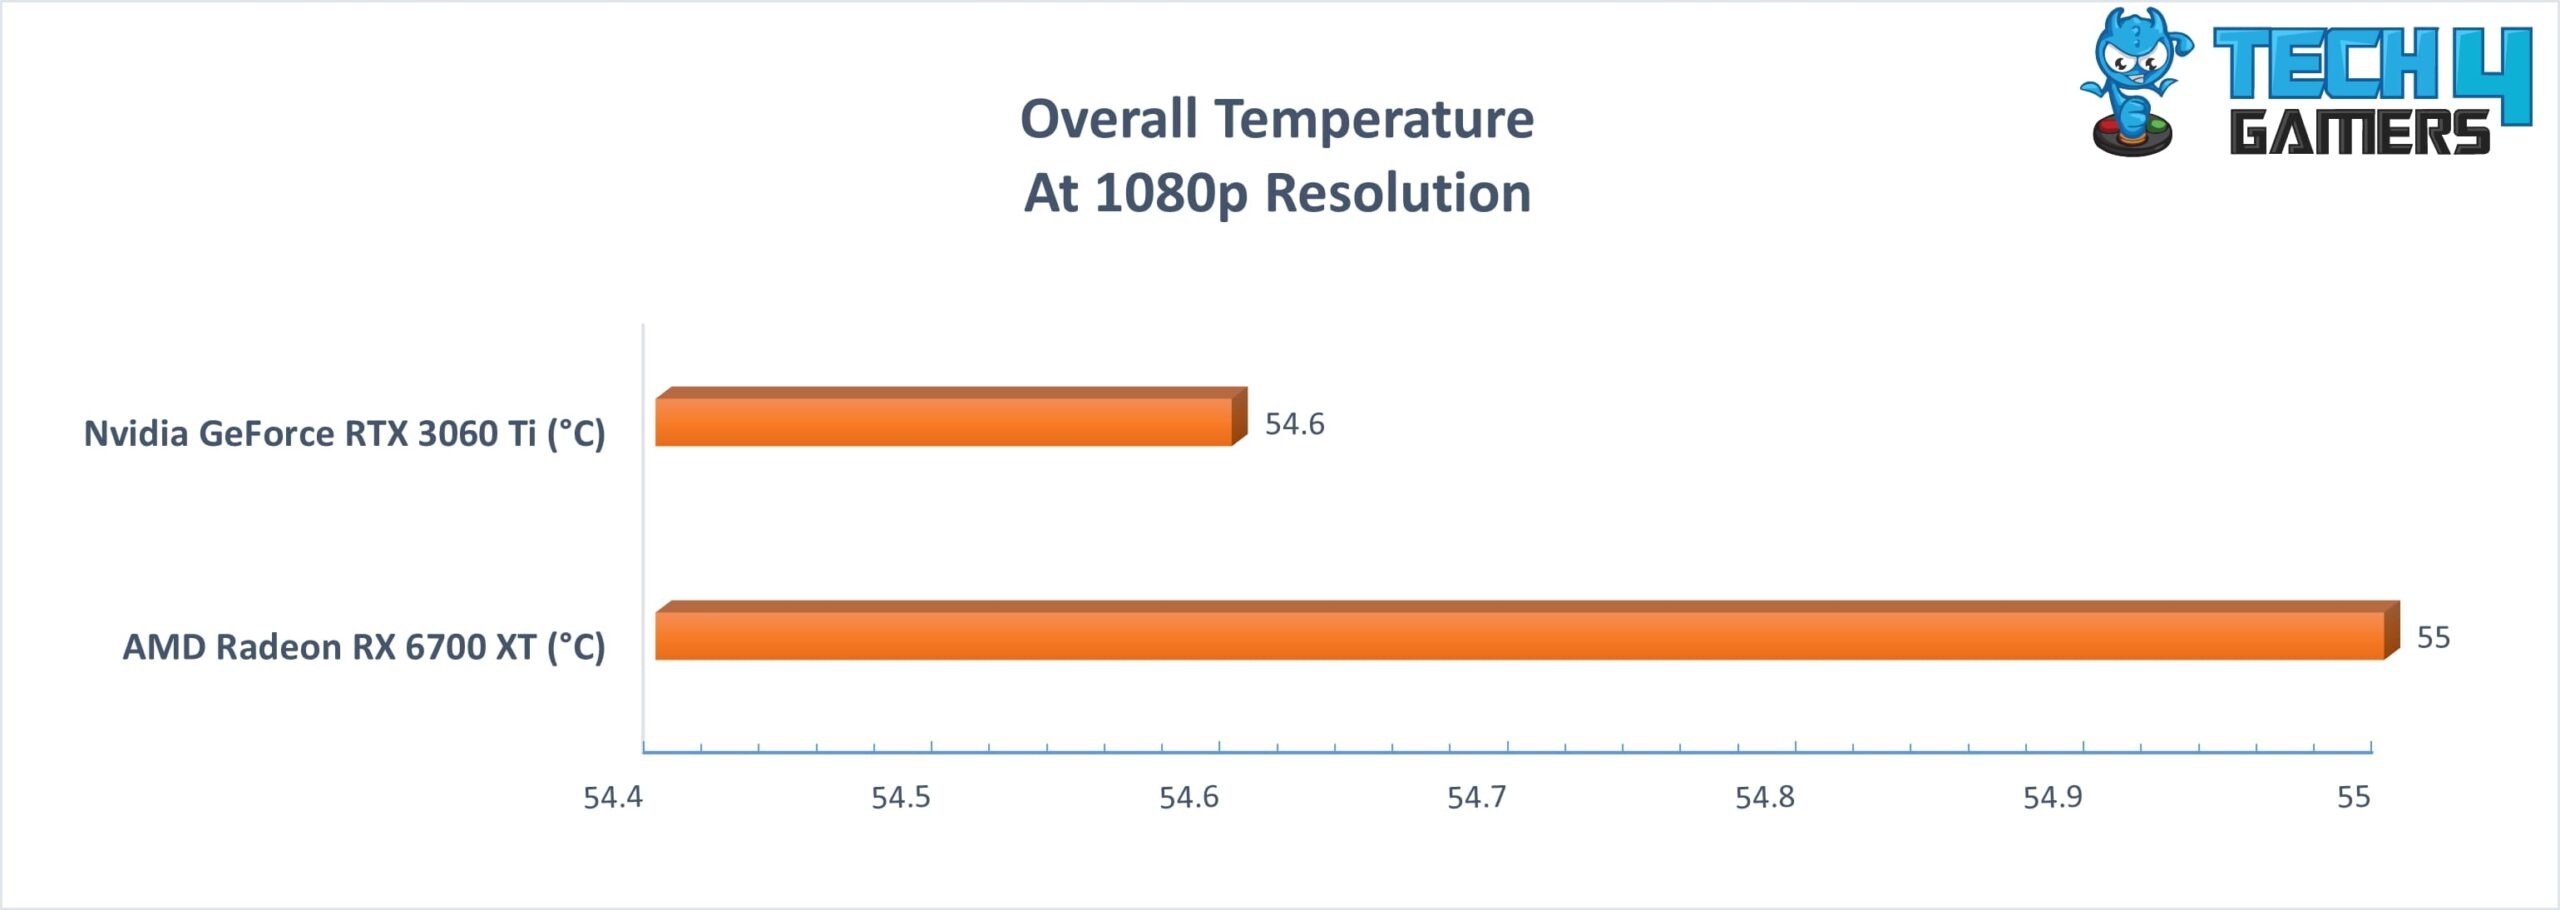 Average Temperature of 2 GPUs